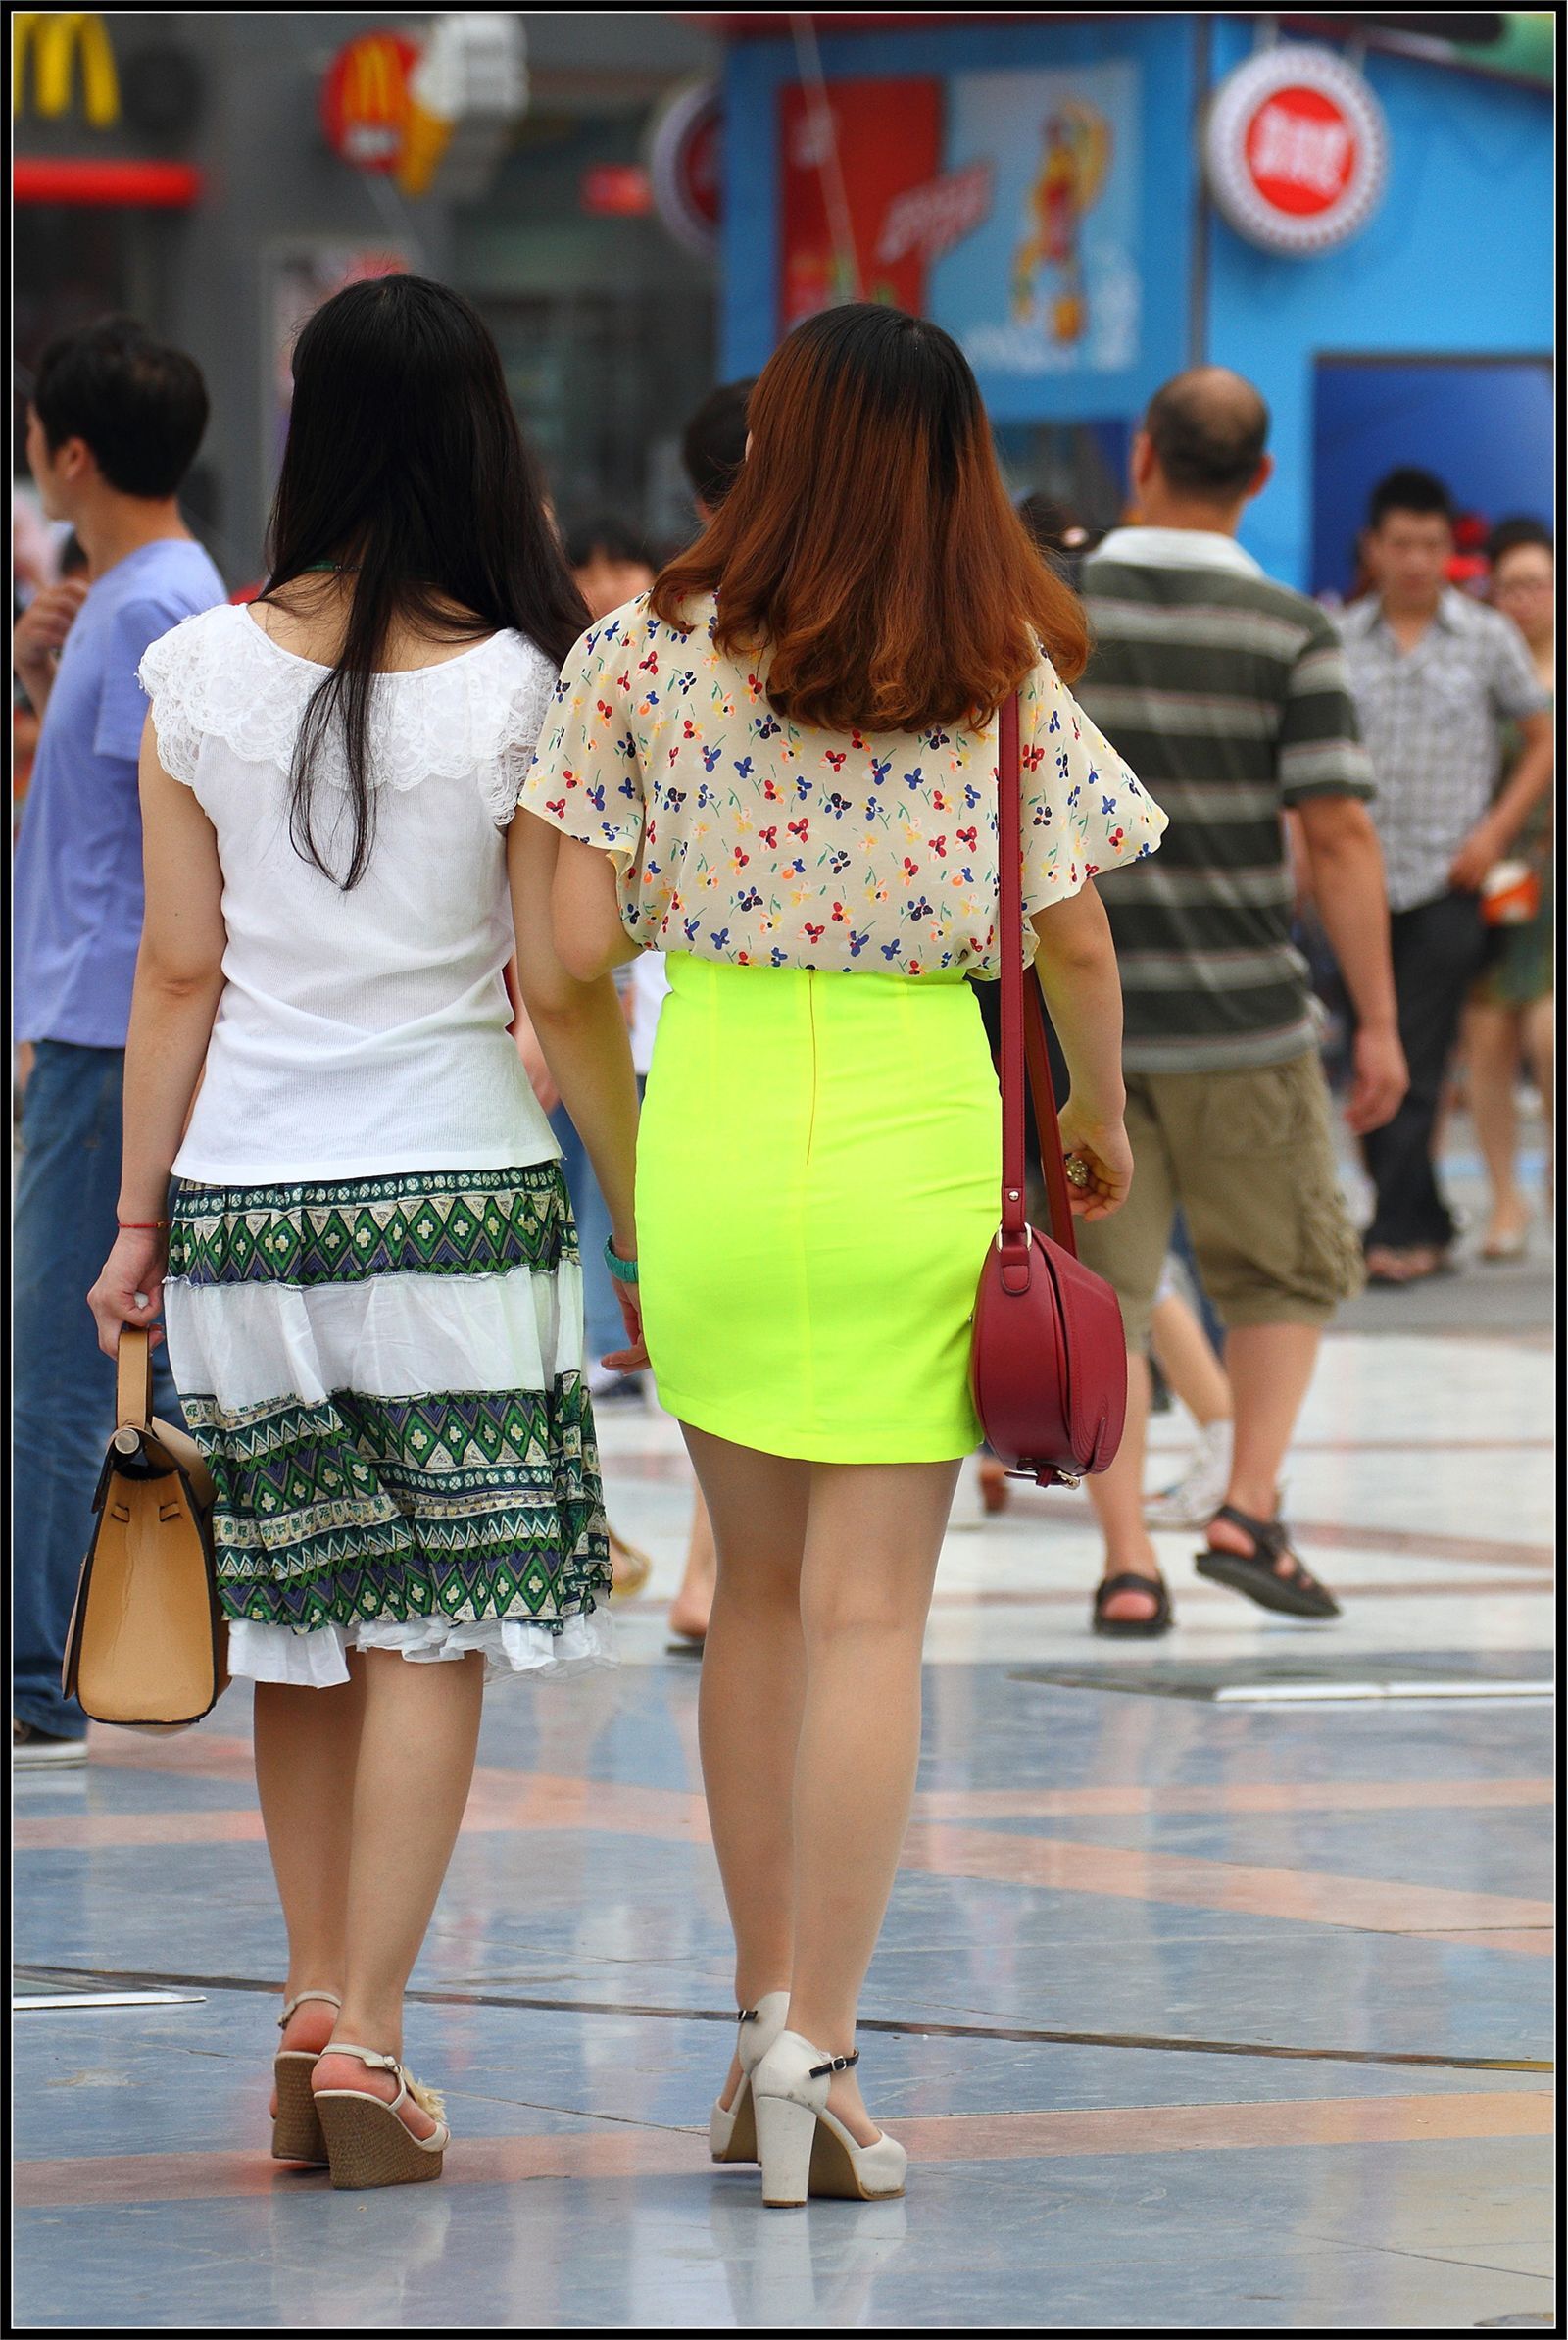 [户外街拍] 2013.09.23 黄裙子下面的大腿高跟很迷人